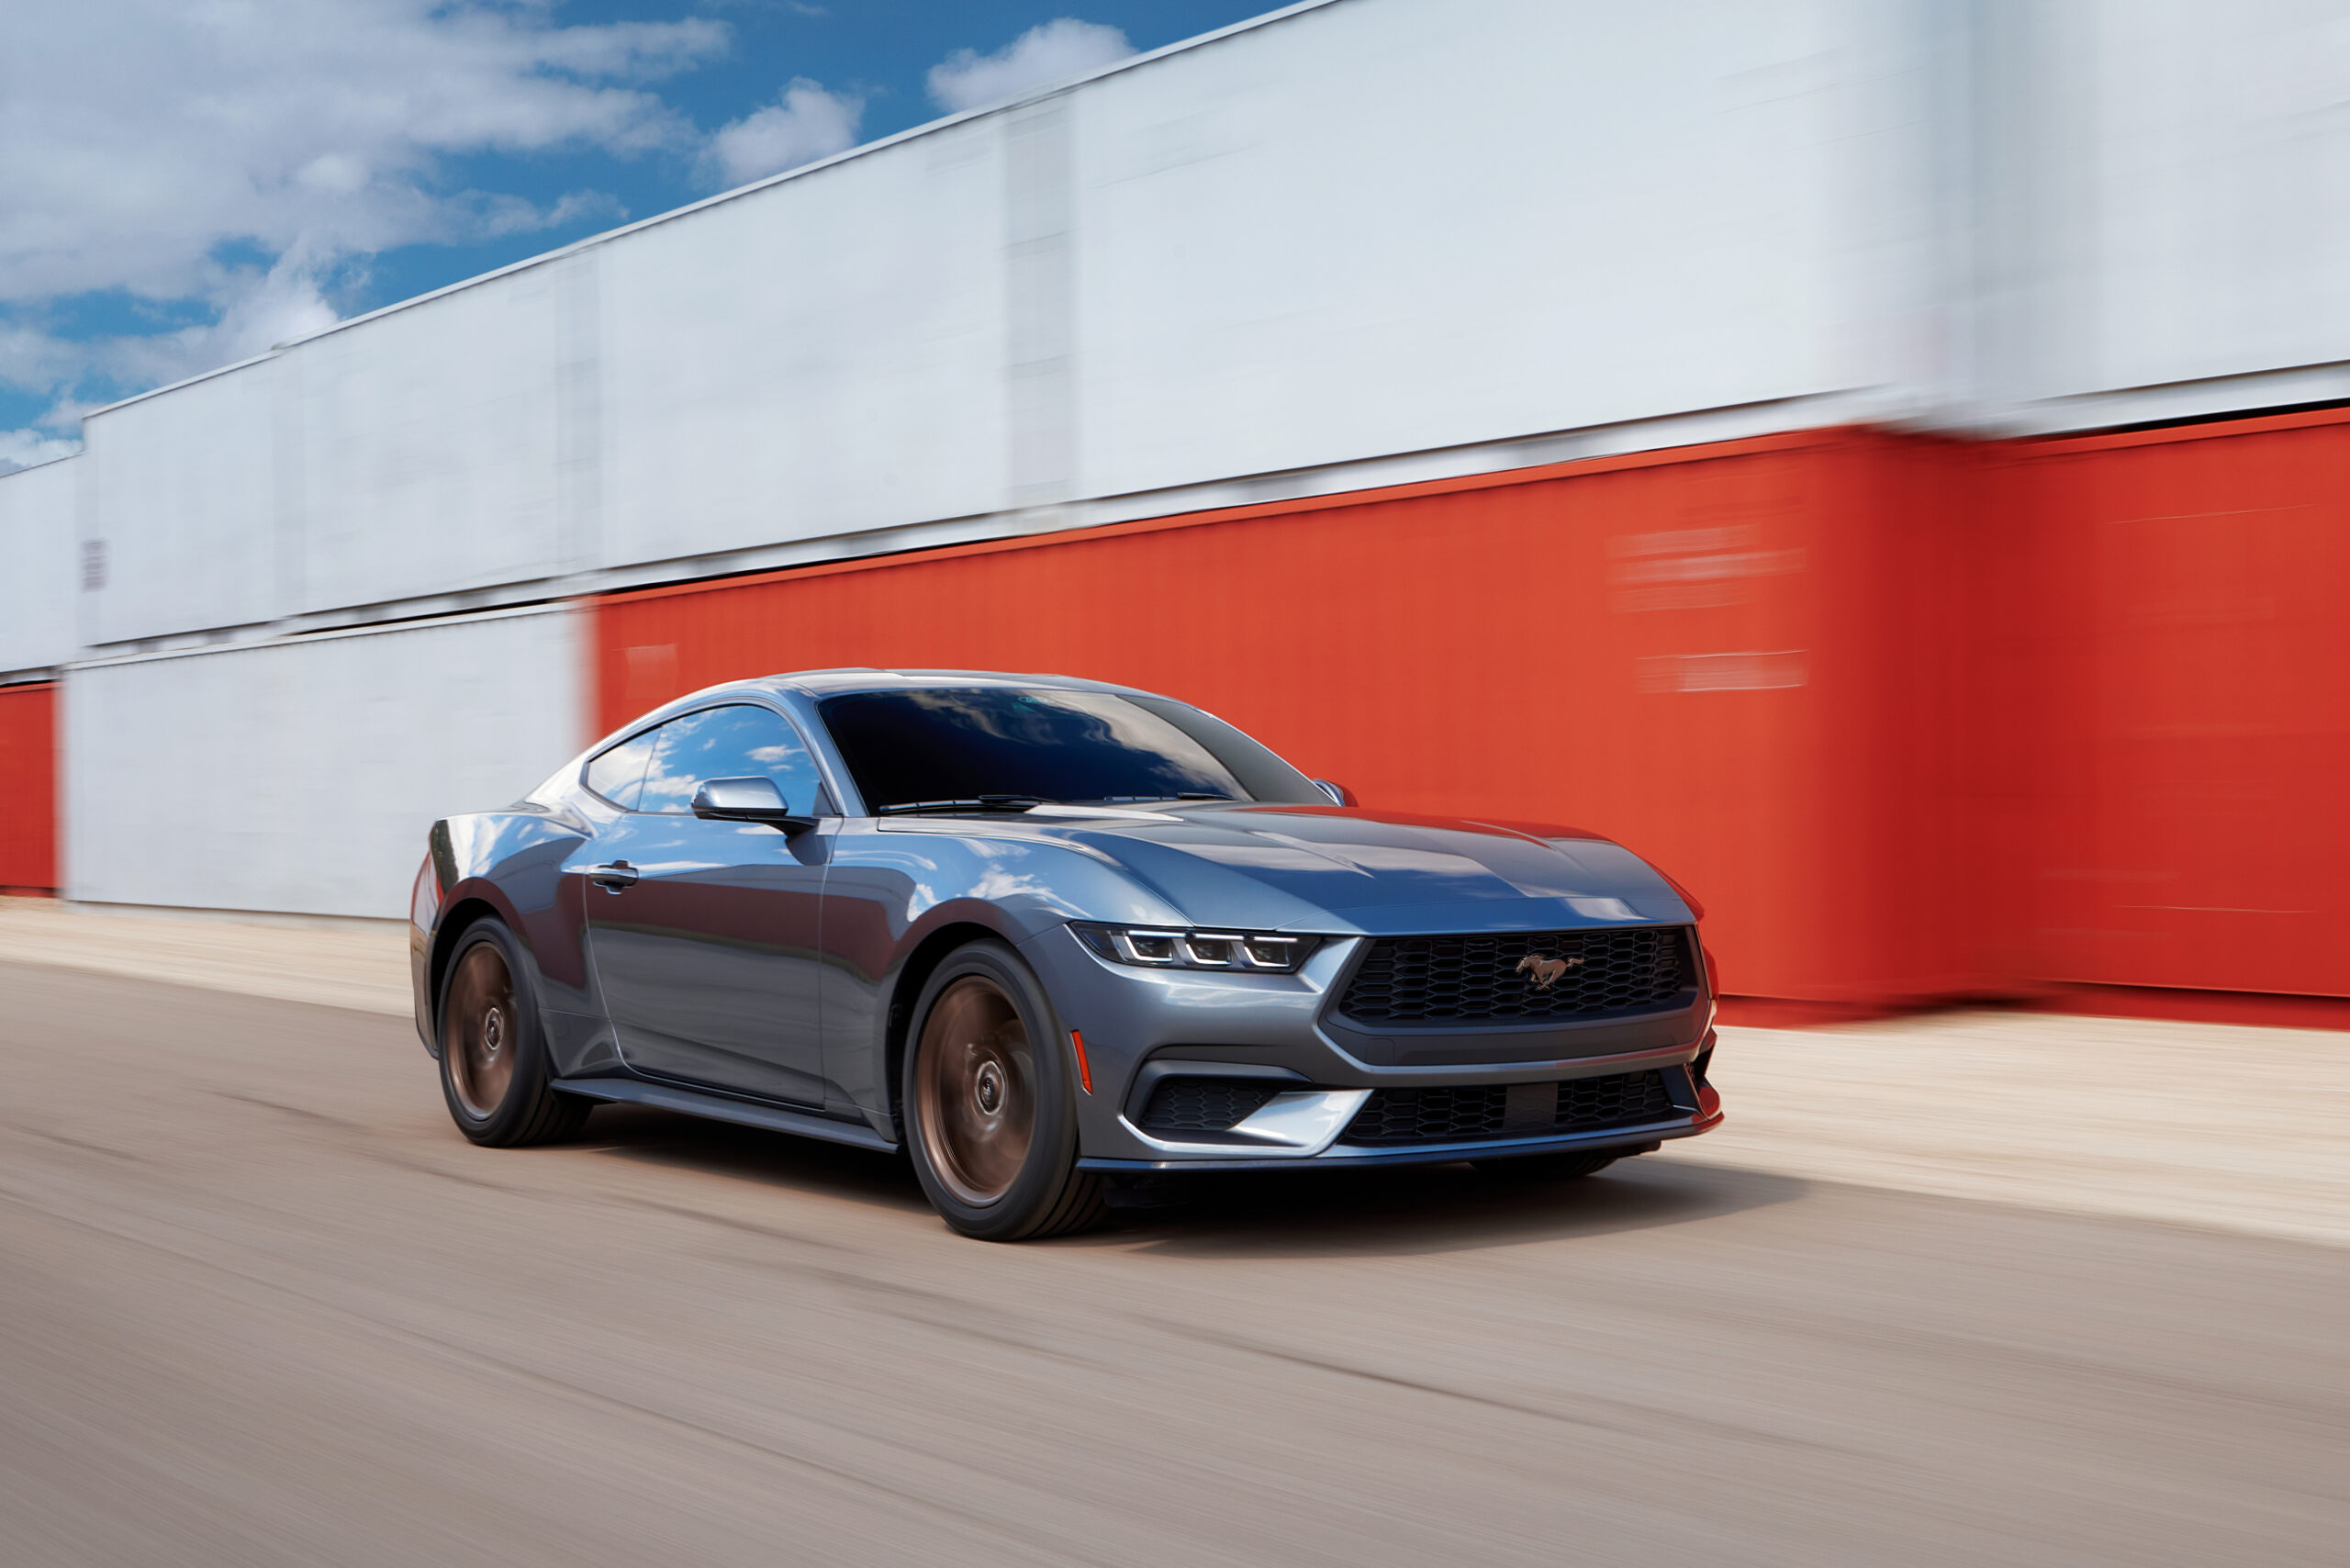 El nuevo Mustang Dark Horse ofrece 500 caballos de fuerza y un motor V8 de 5 litros, ¡el más potente de la historia!